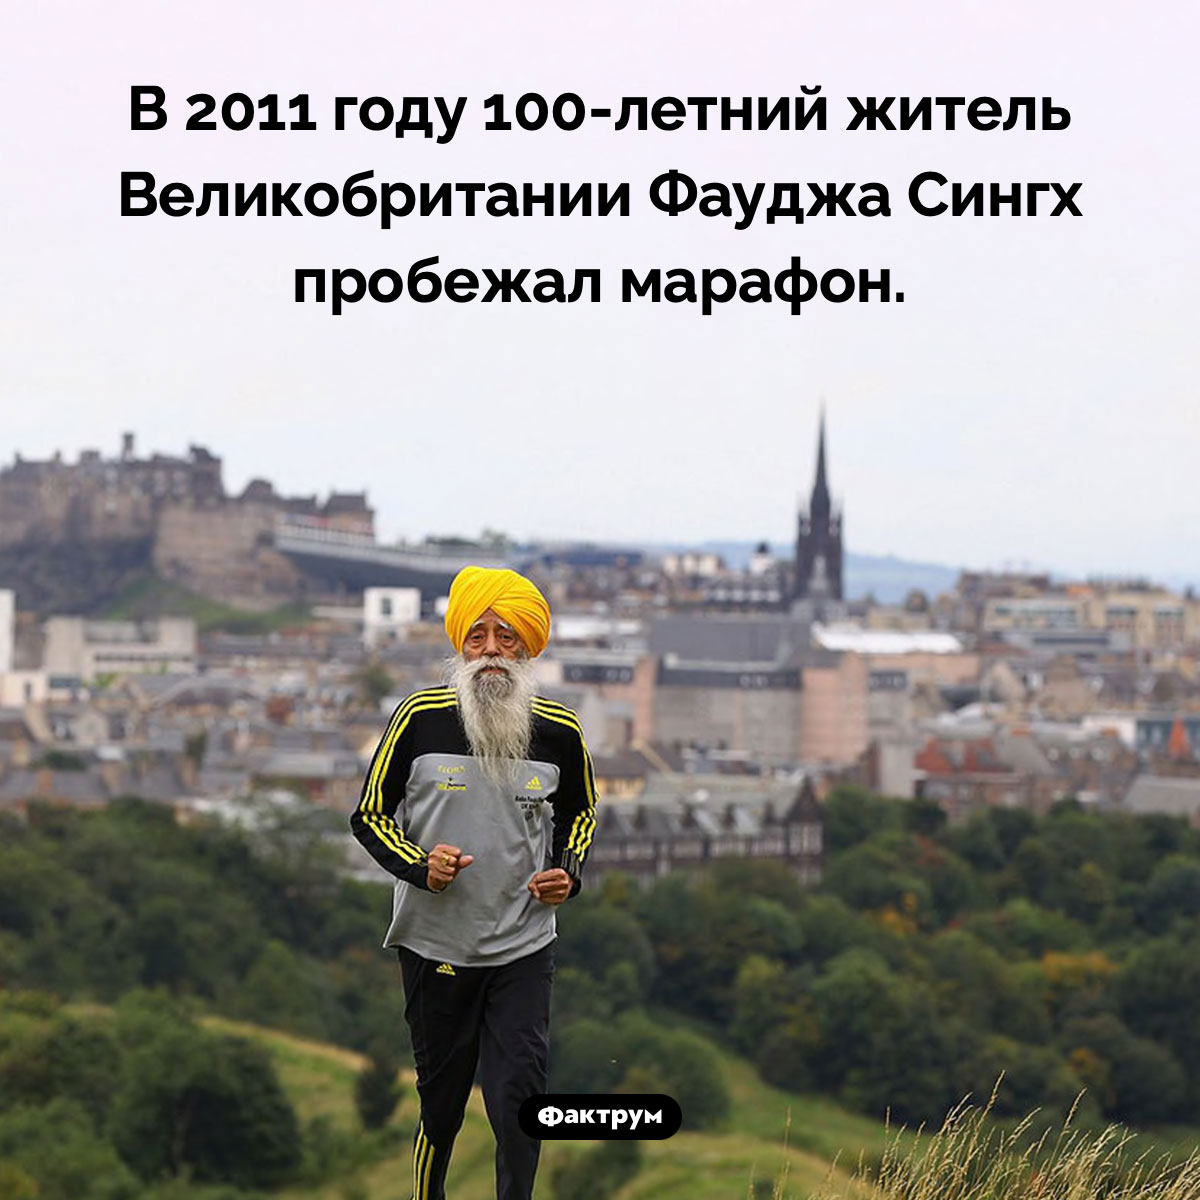 100-летний марафонец. В 2011 году 100-летний житель Великобритании Фауджа Сингх пробежал марафон.